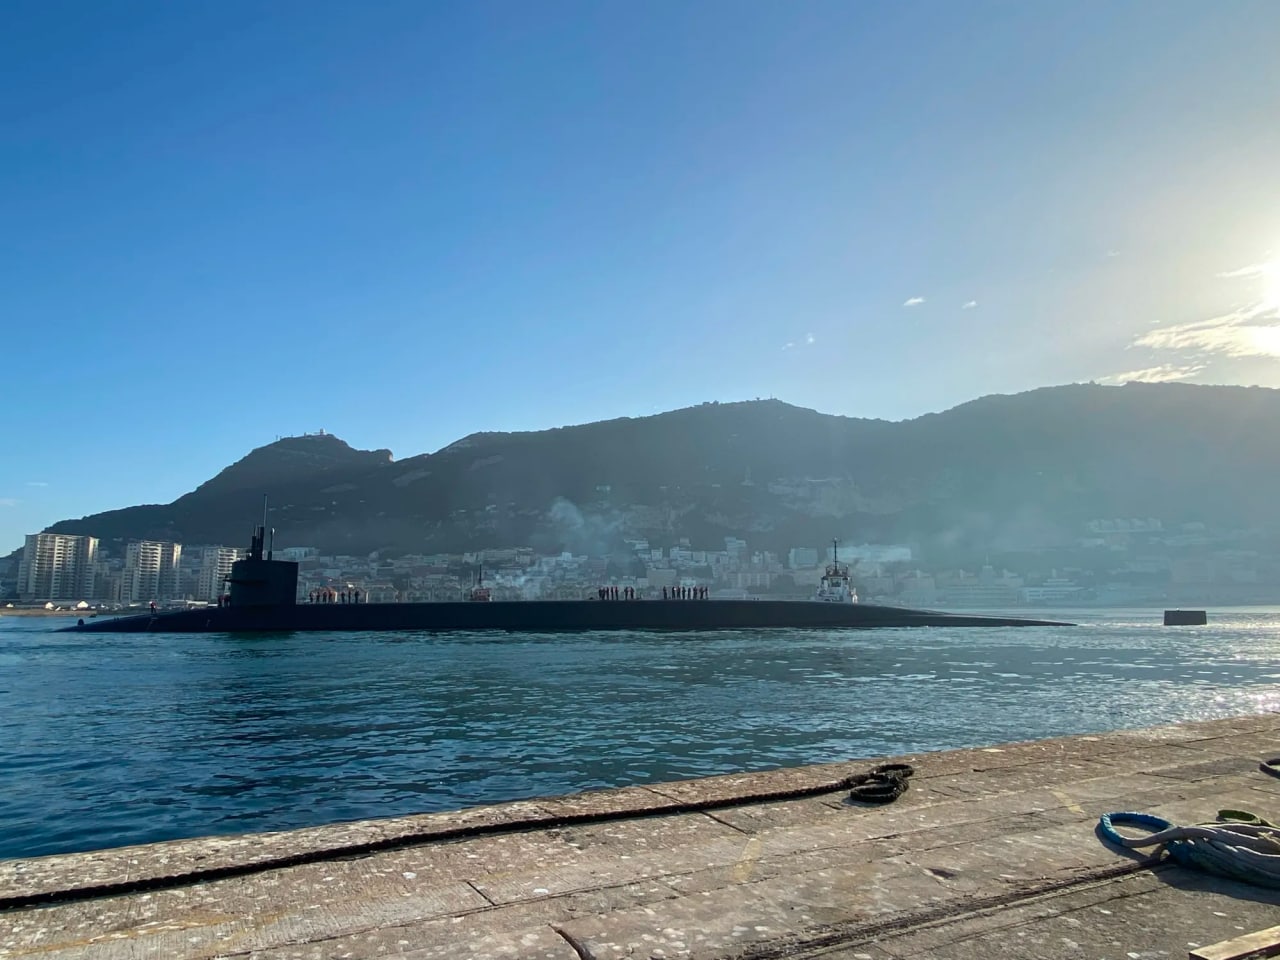 Натяк путіну - США ввели у Середземне море найбільший у світі підводний носій ядерної зброї